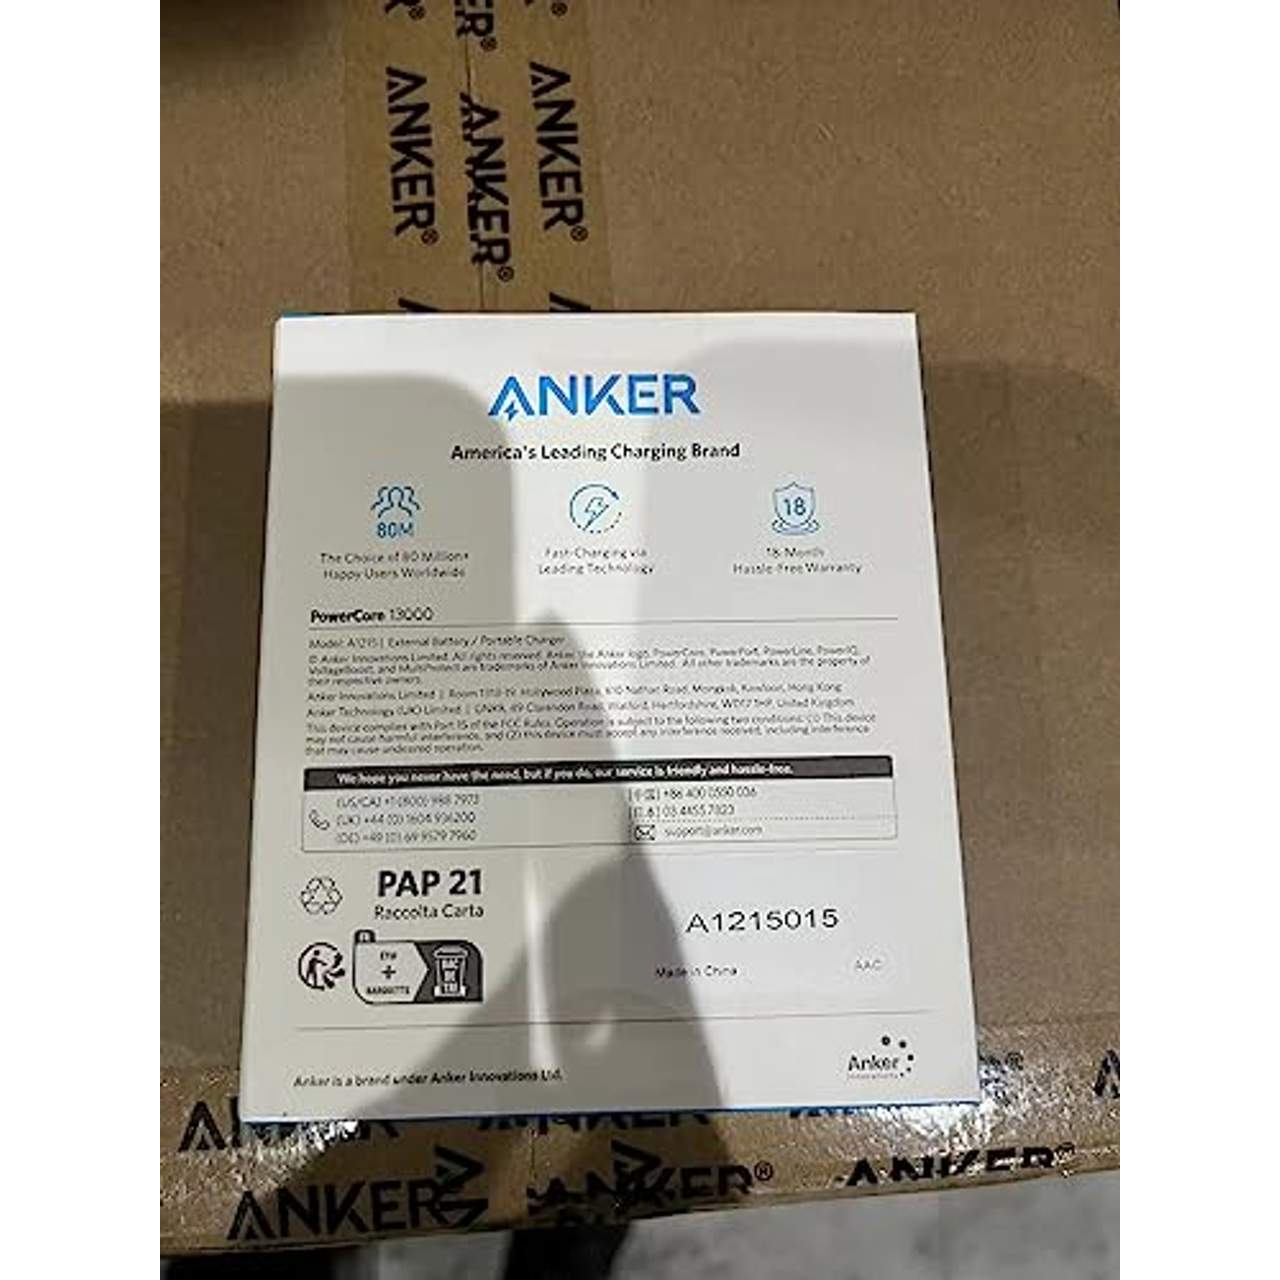 Anker PowerCore 13000mAh